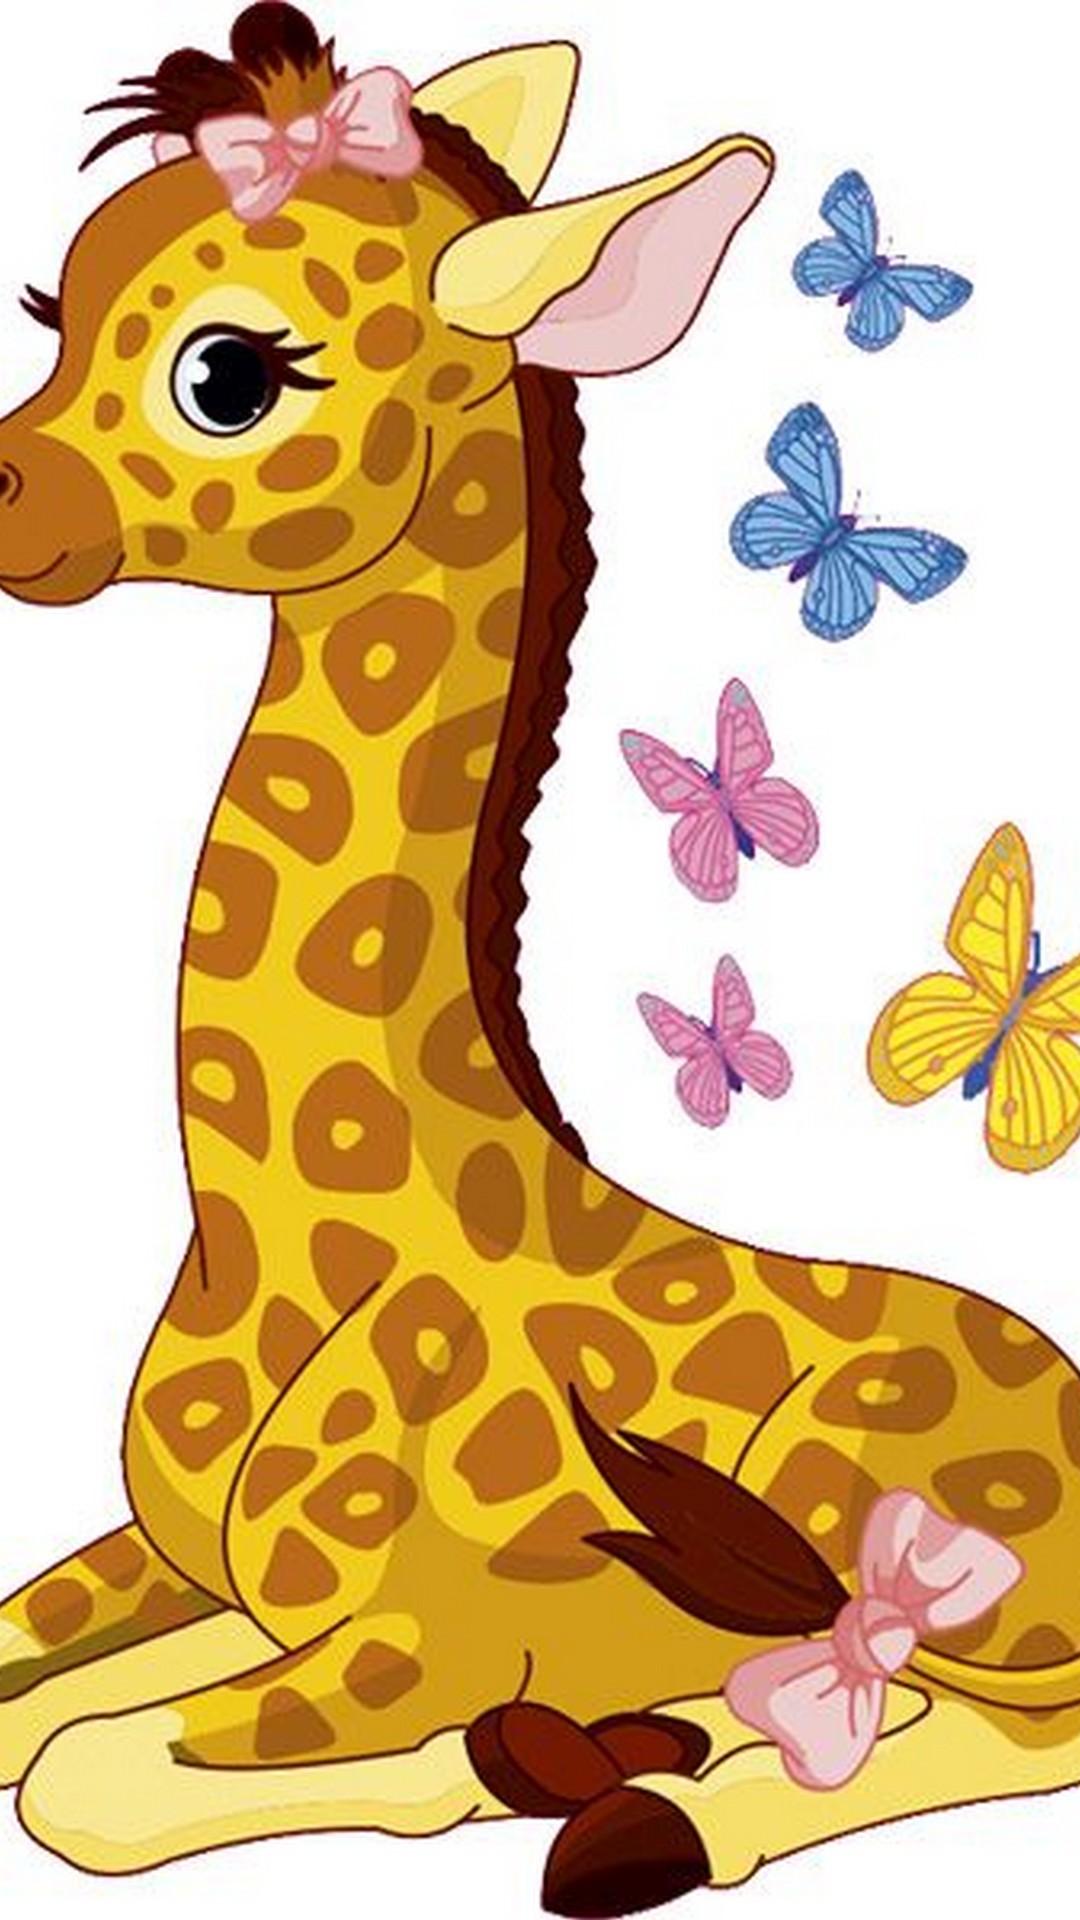 Cute Baby Giraffe Wallpaper iPhone 3D iPhone Wallpaper